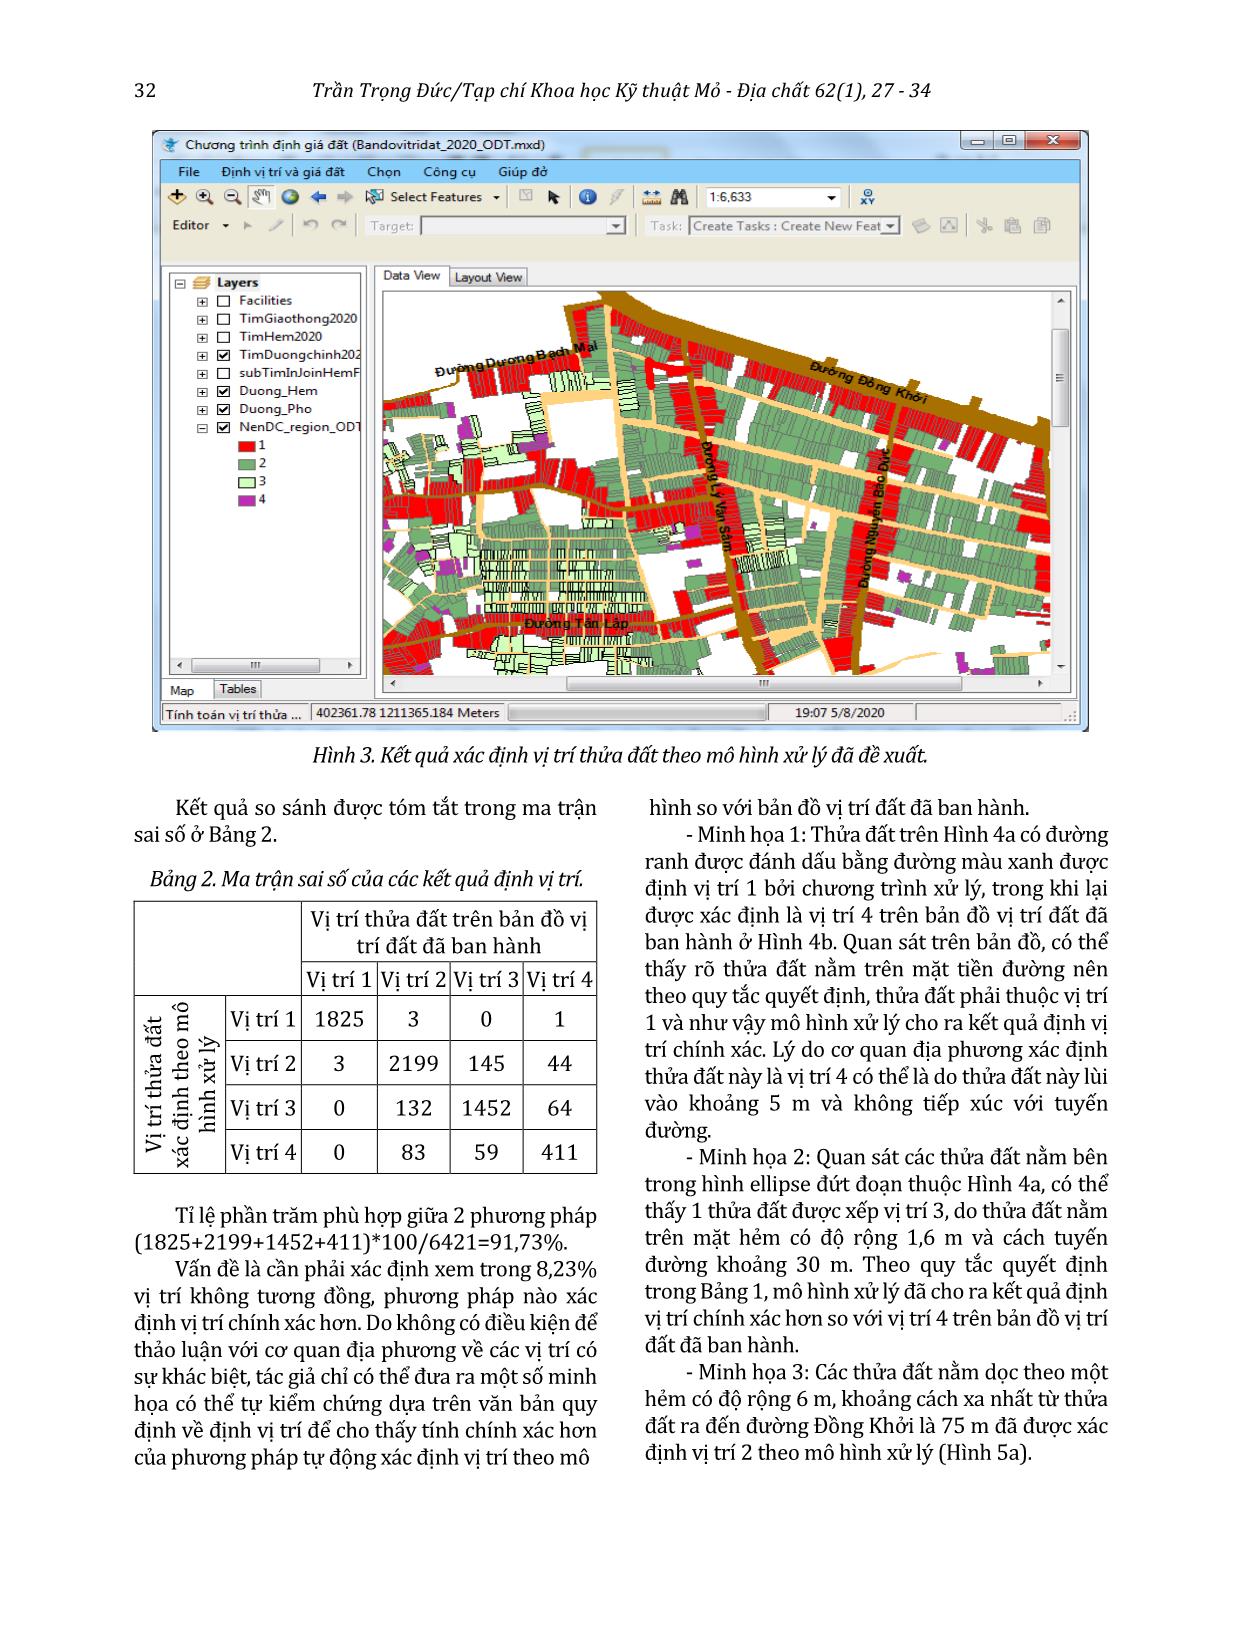 Định vị trí và giá cho từng thửa đất sử dụng ArcGIS Engine trang 6